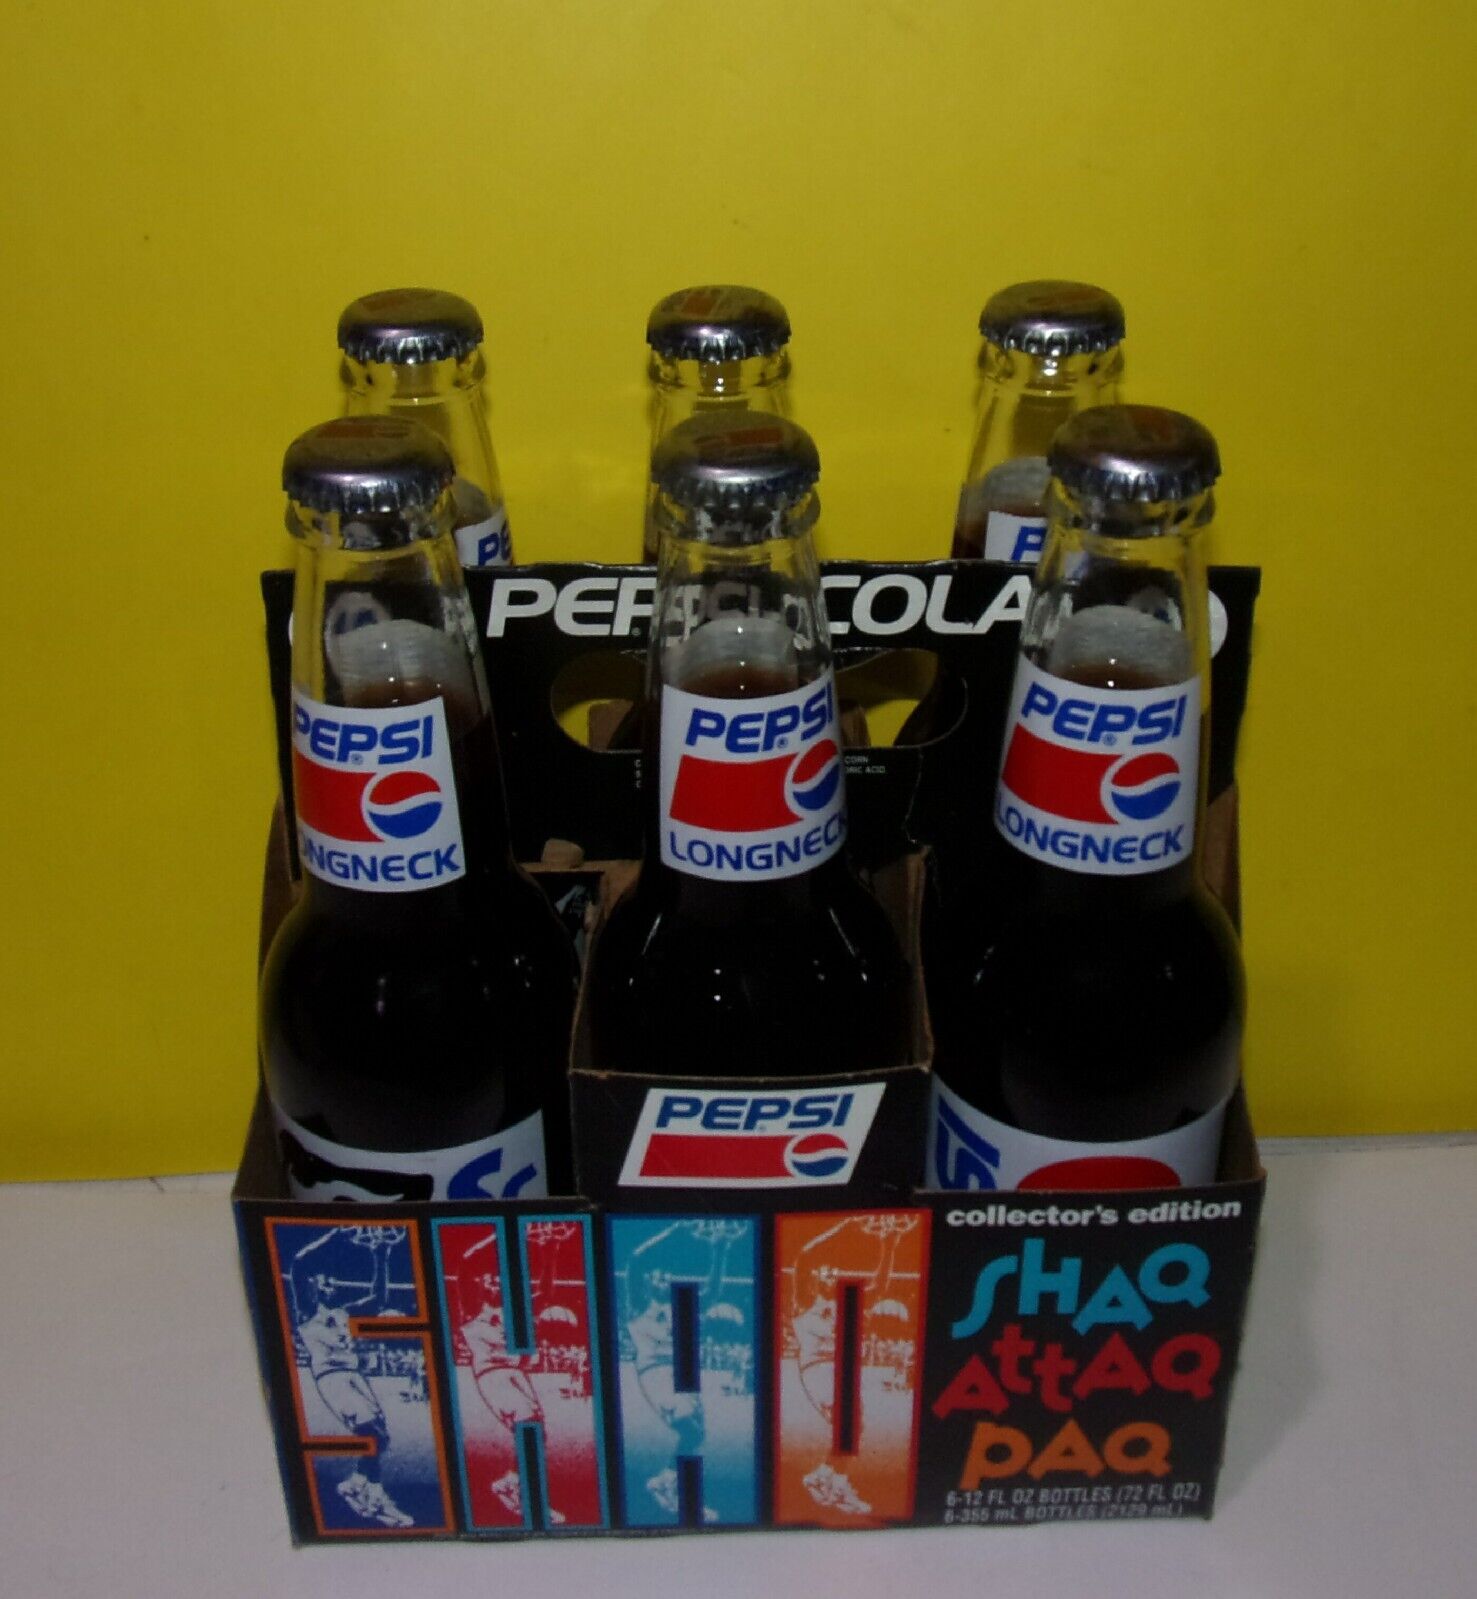 1992-93 Shaq Rookie Attaq Paq 6 Pack Pepsi Bottles w/ Carrier Orlando Magic NBA.